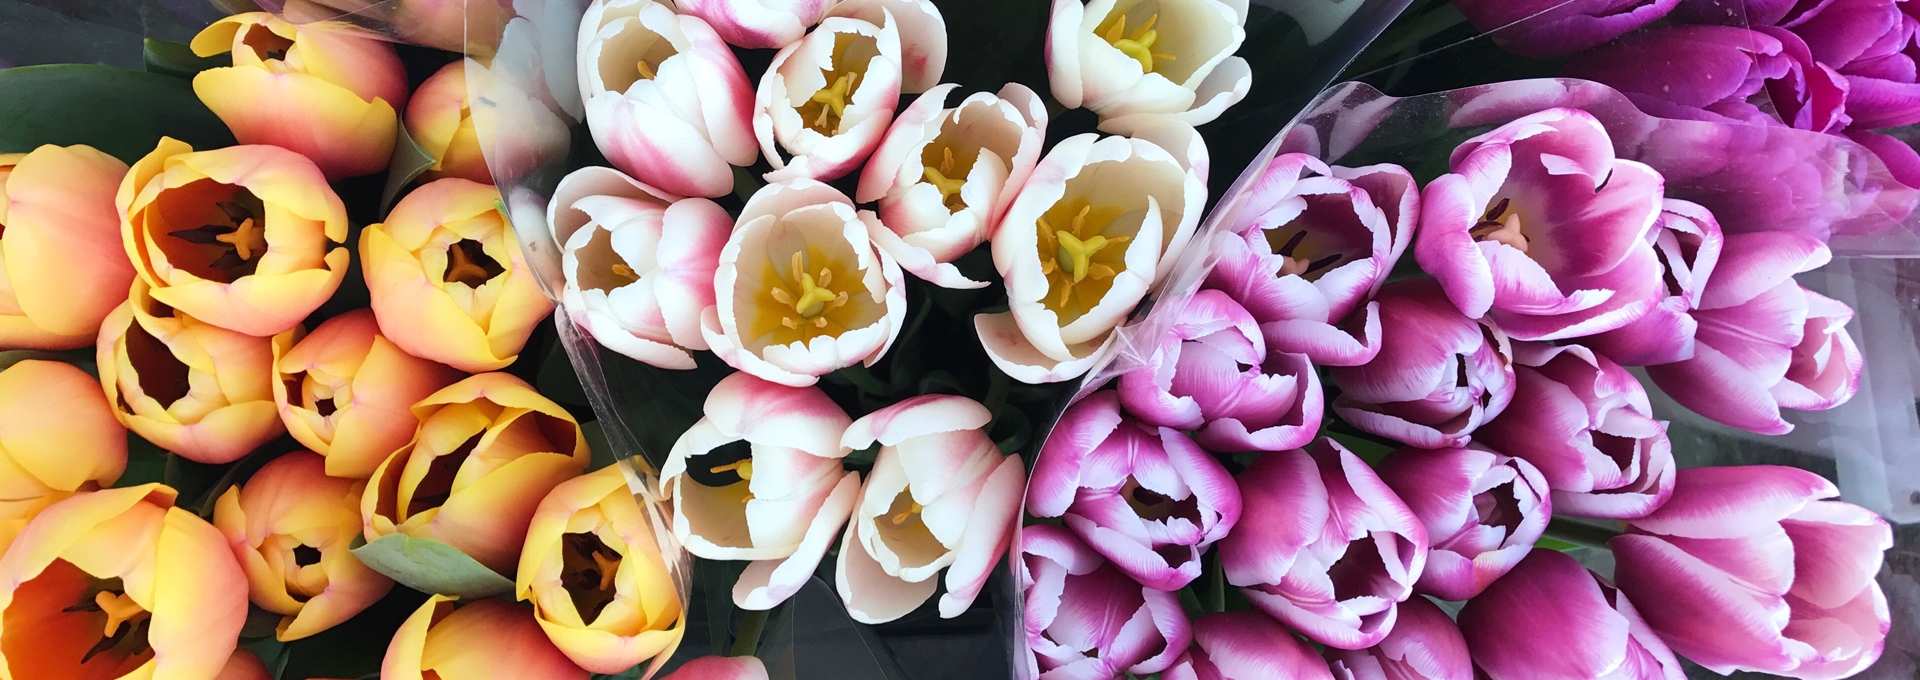 Tulpen in wunderschönen Farben